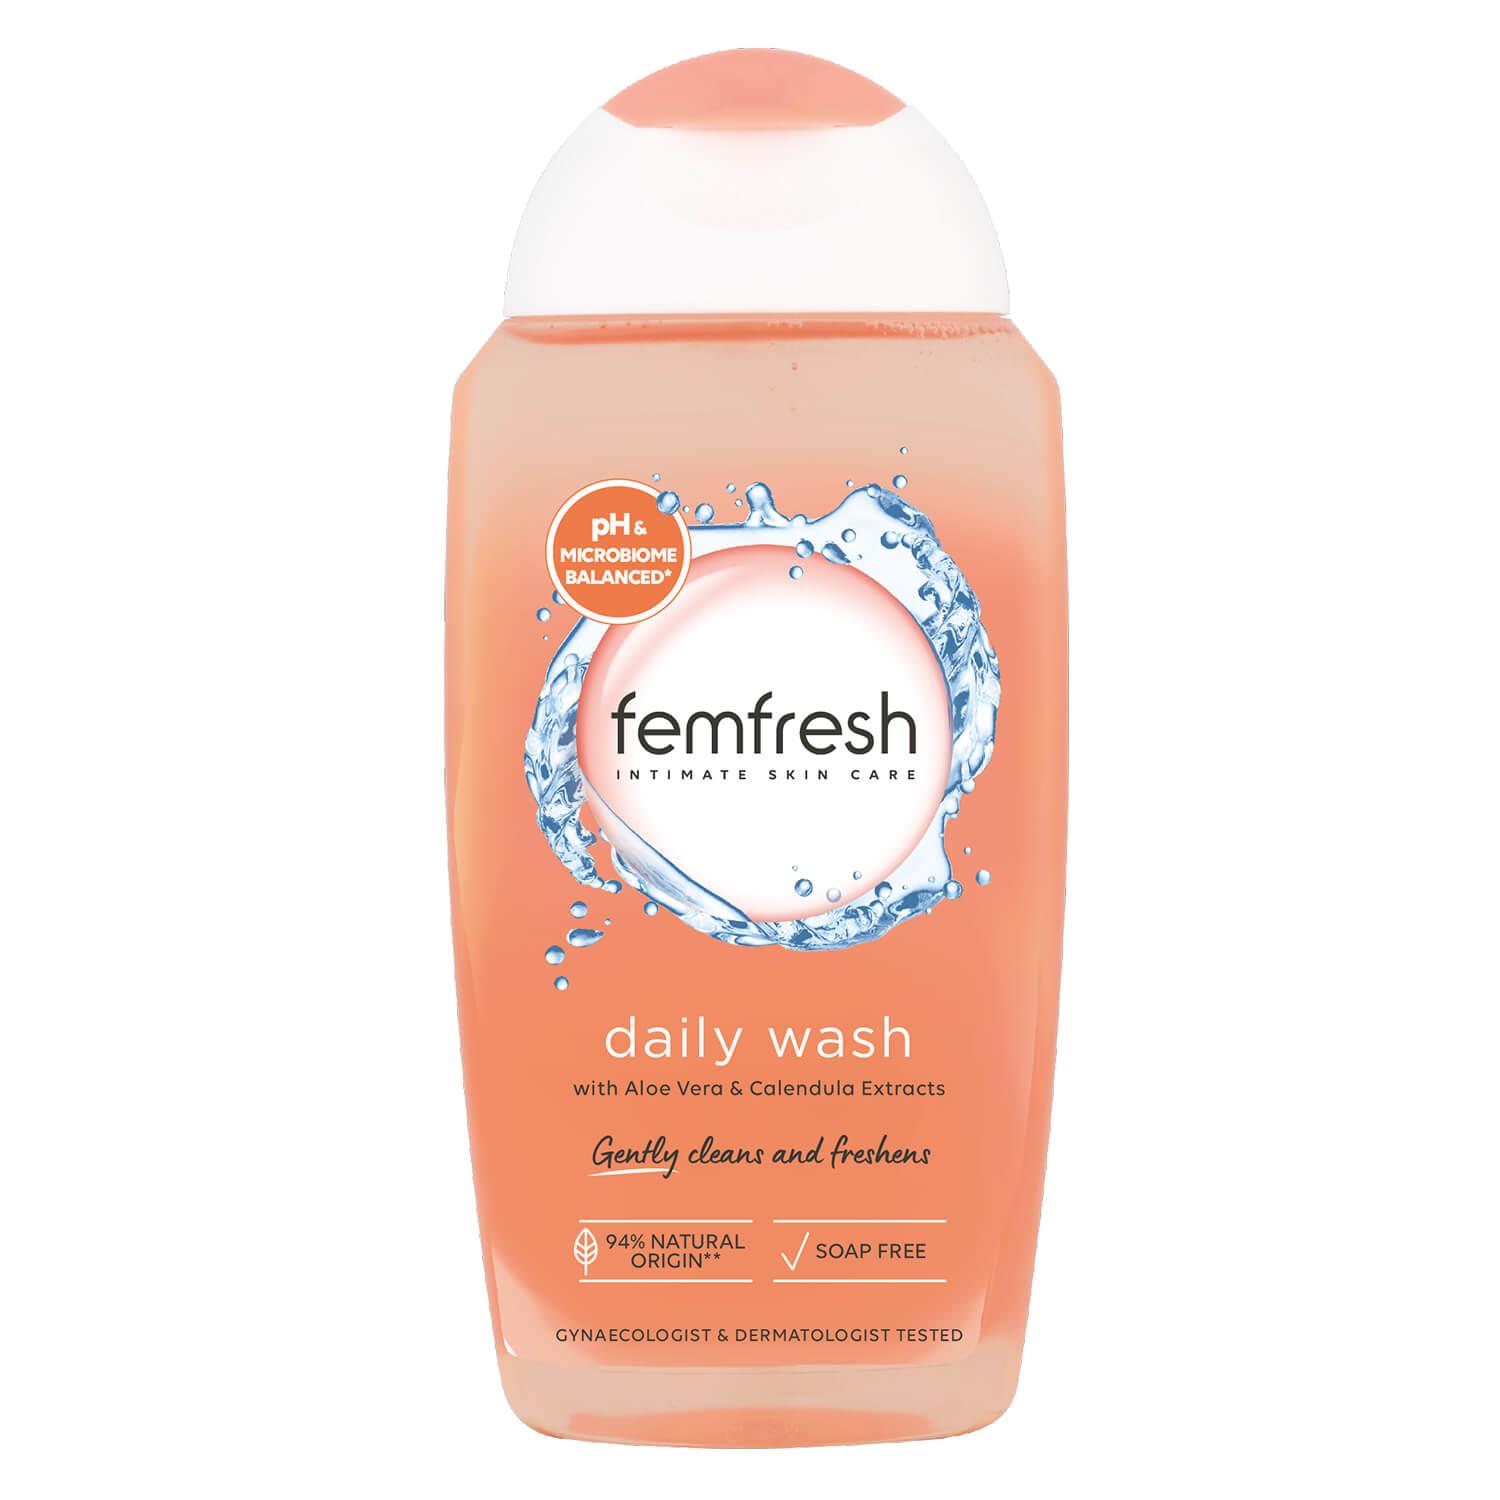 femfresh - daily intimate wash